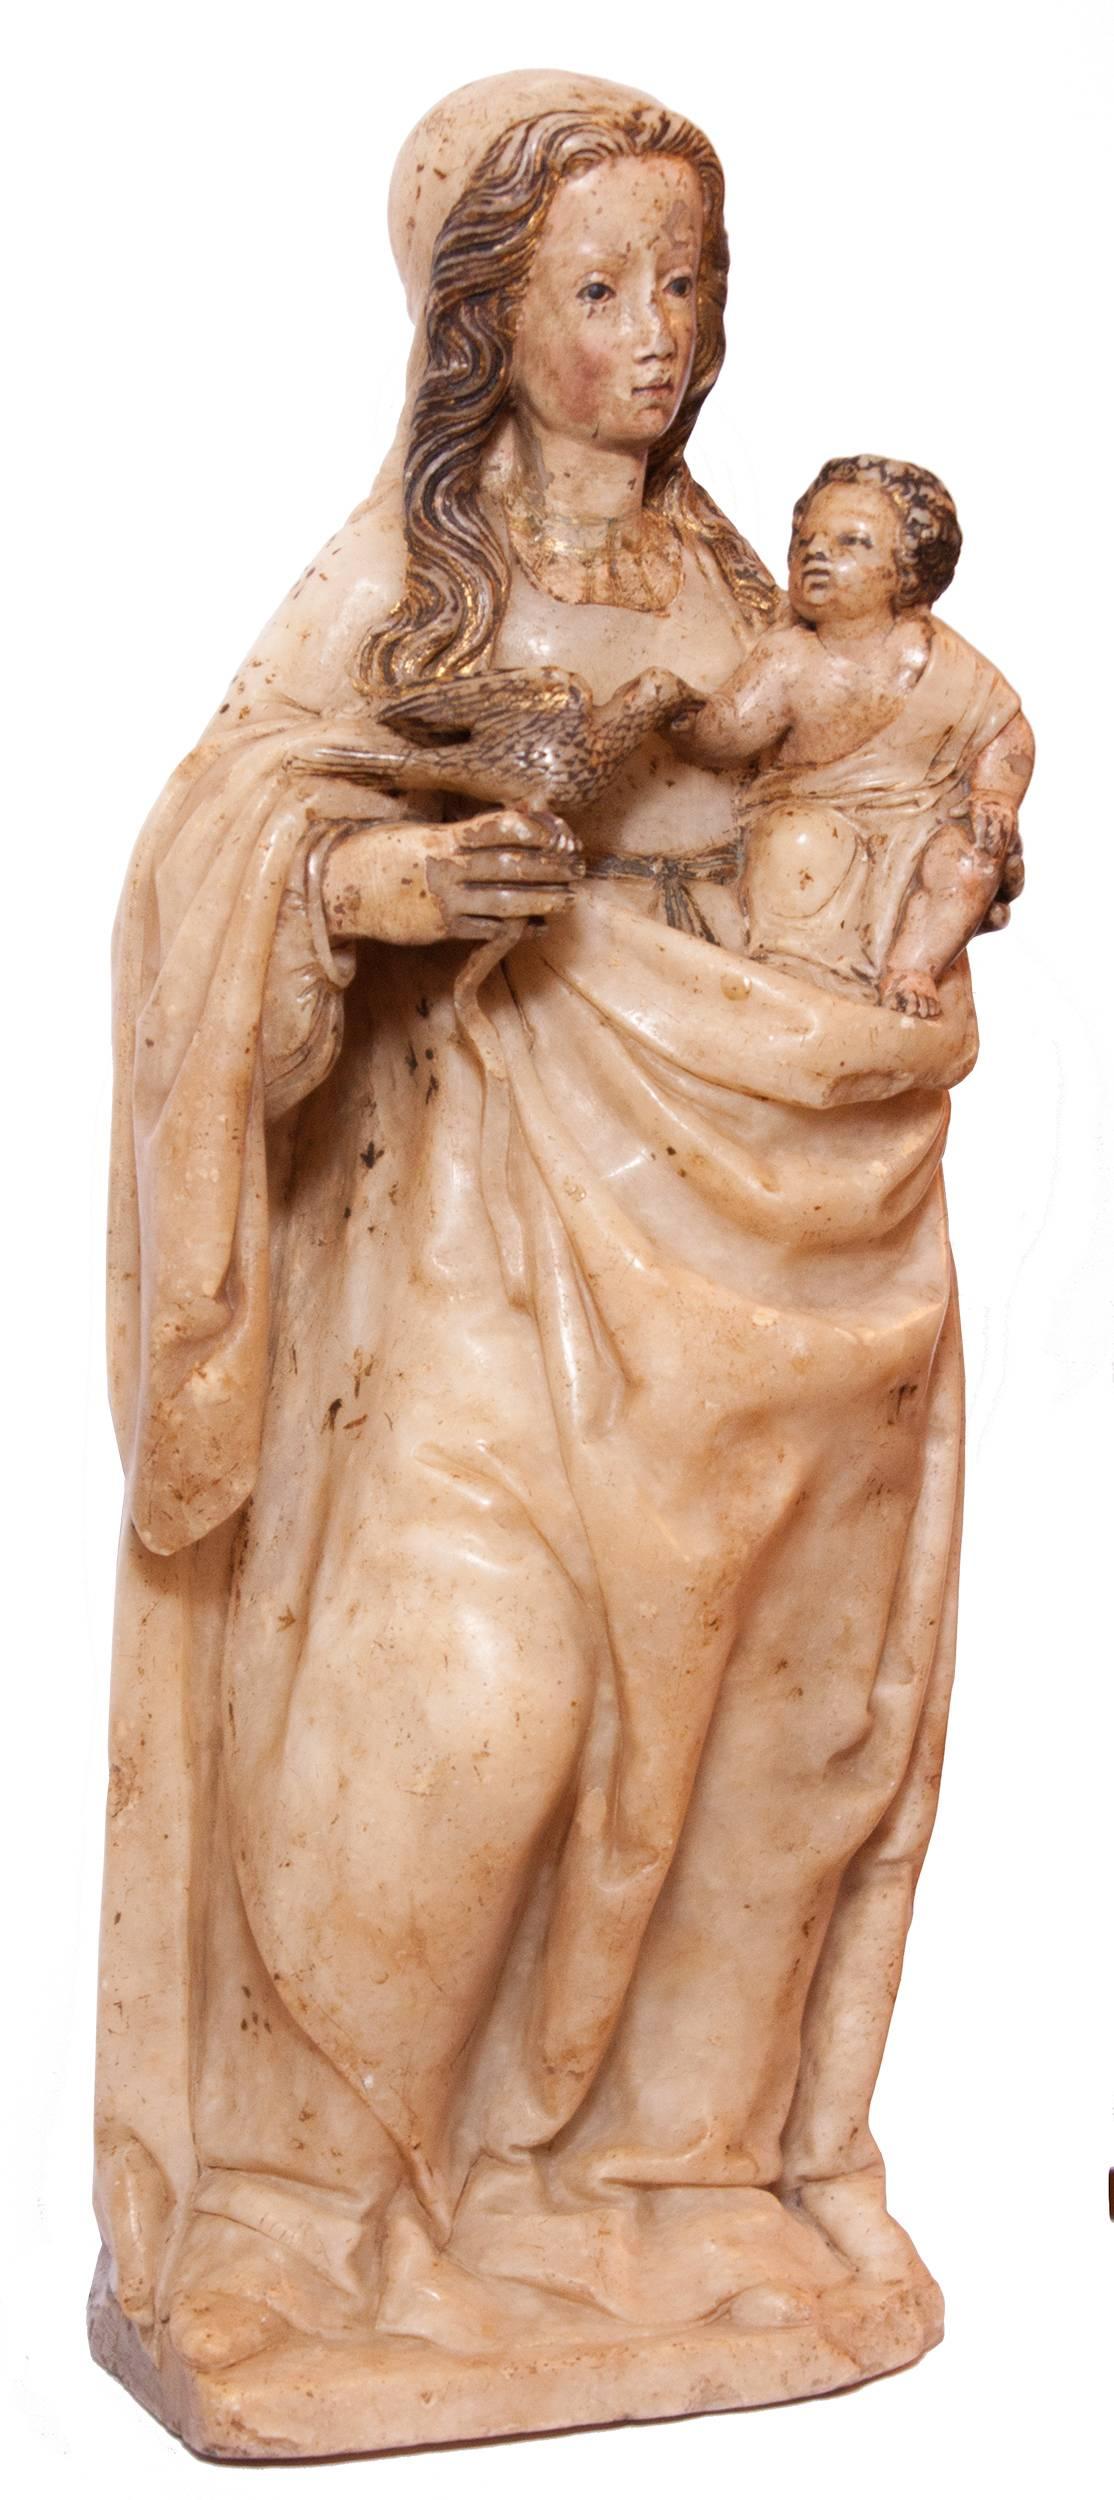 Unknown Figurative Sculpture - Virgin and Child in alabaster around 1500, Spain